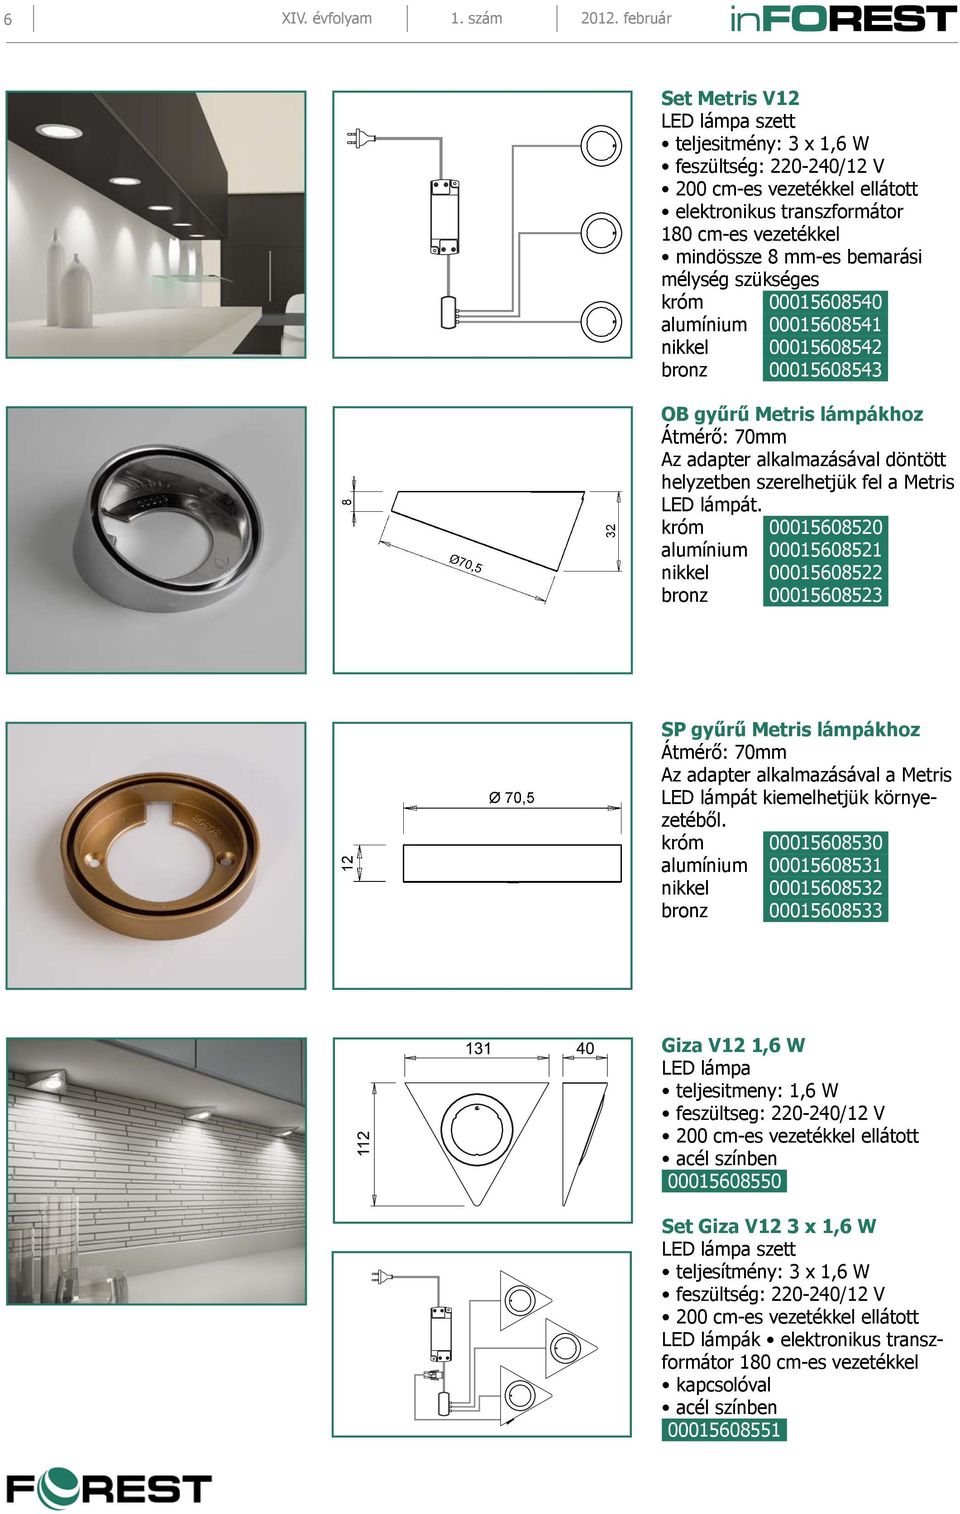 nikkel 00015608542 bronz 00015608543 OB gyűrű Metris lámpákhoz Átmérő: 70mm Az adapter alkalmazásával döntött helyzetben szerelhetjük fel a Metris LED lámpát.